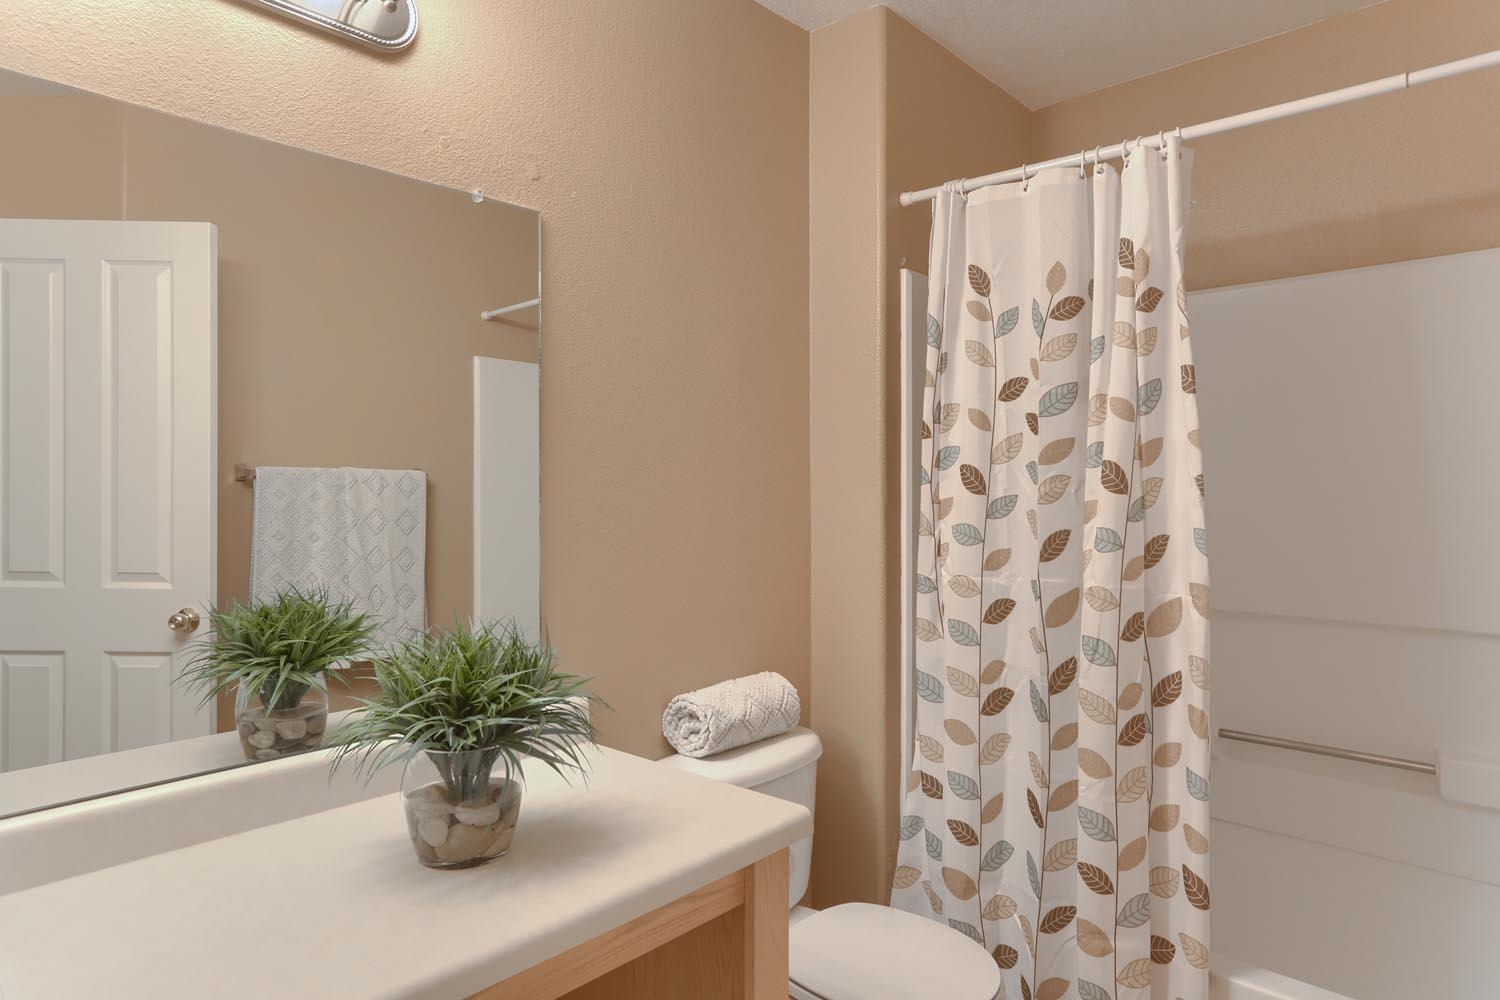 4715 Contenta, Santa Fe, New Mexico 87507, 3 Bedrooms Bedrooms, ,2 BathroomsBathrooms,Residential,For Sale,4715 Contenta,202104559